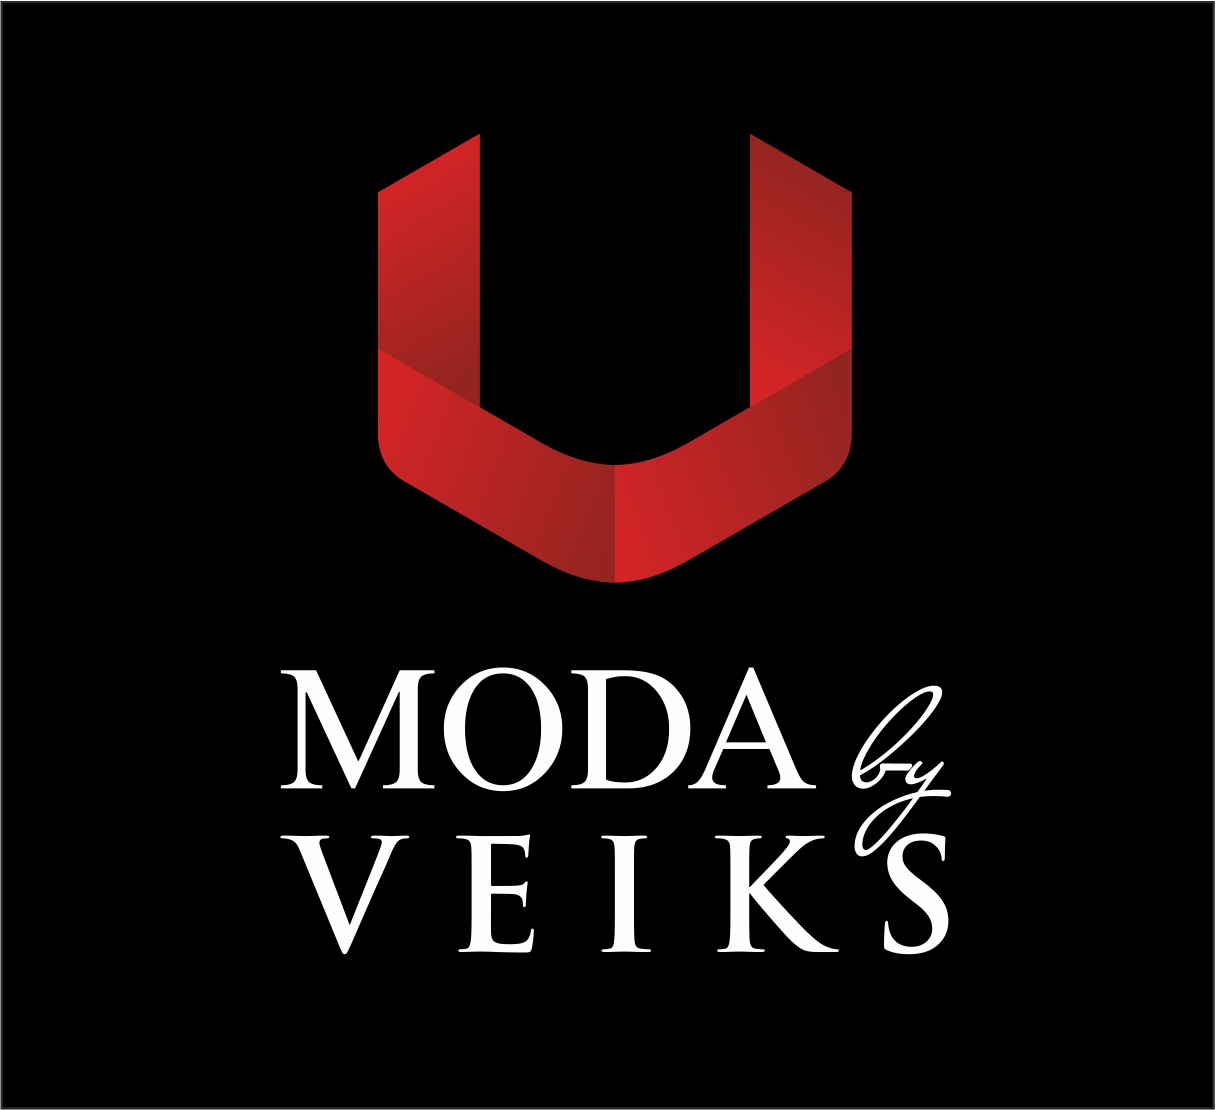 MODA by VEIKS